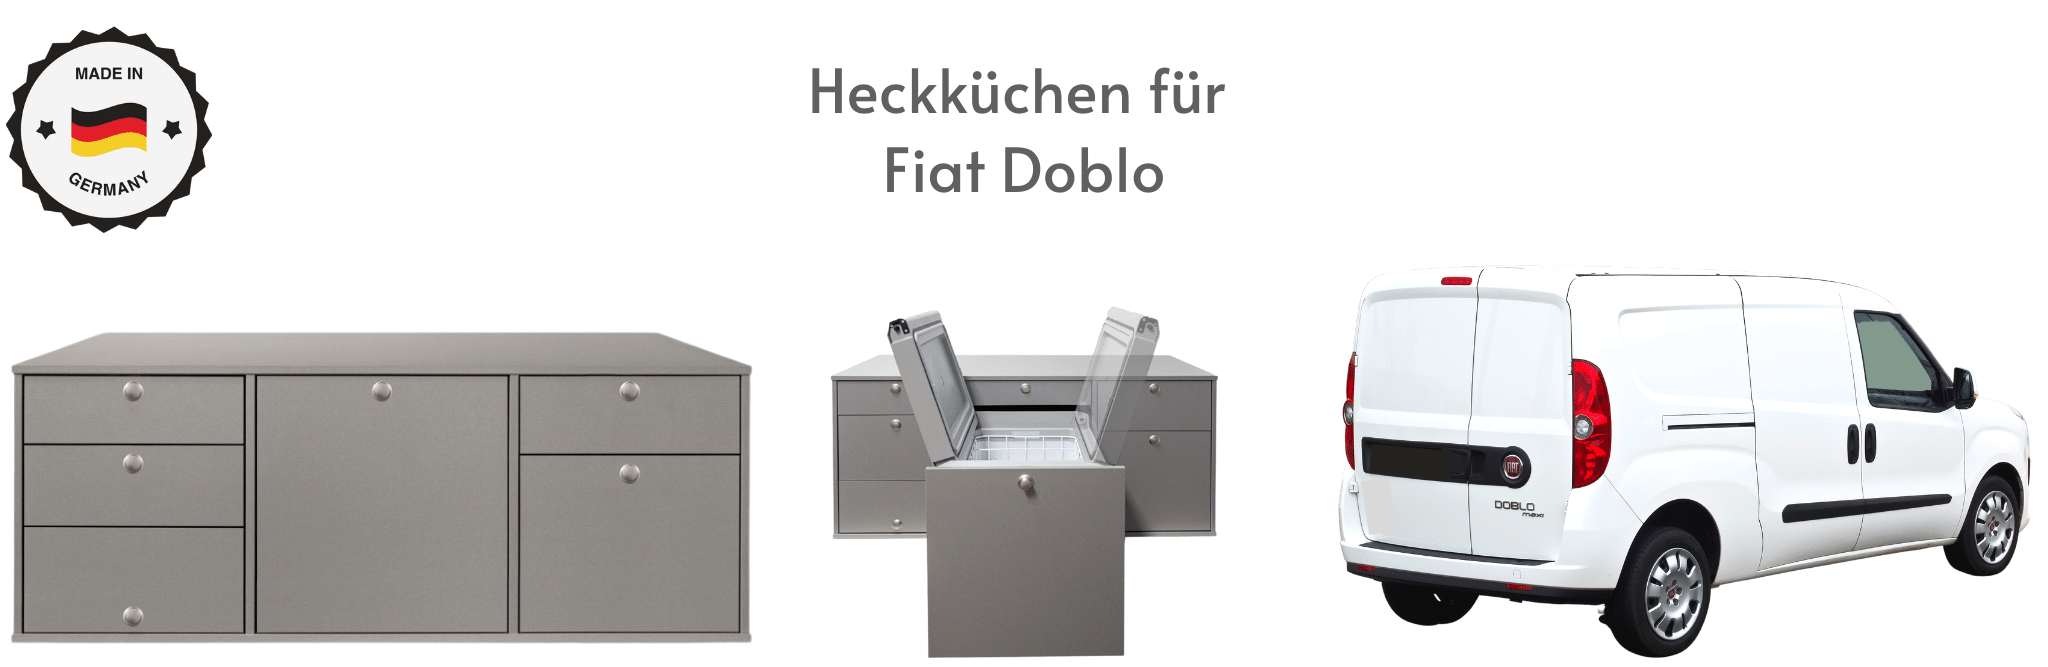 Heckküchen für Fiat Doblo